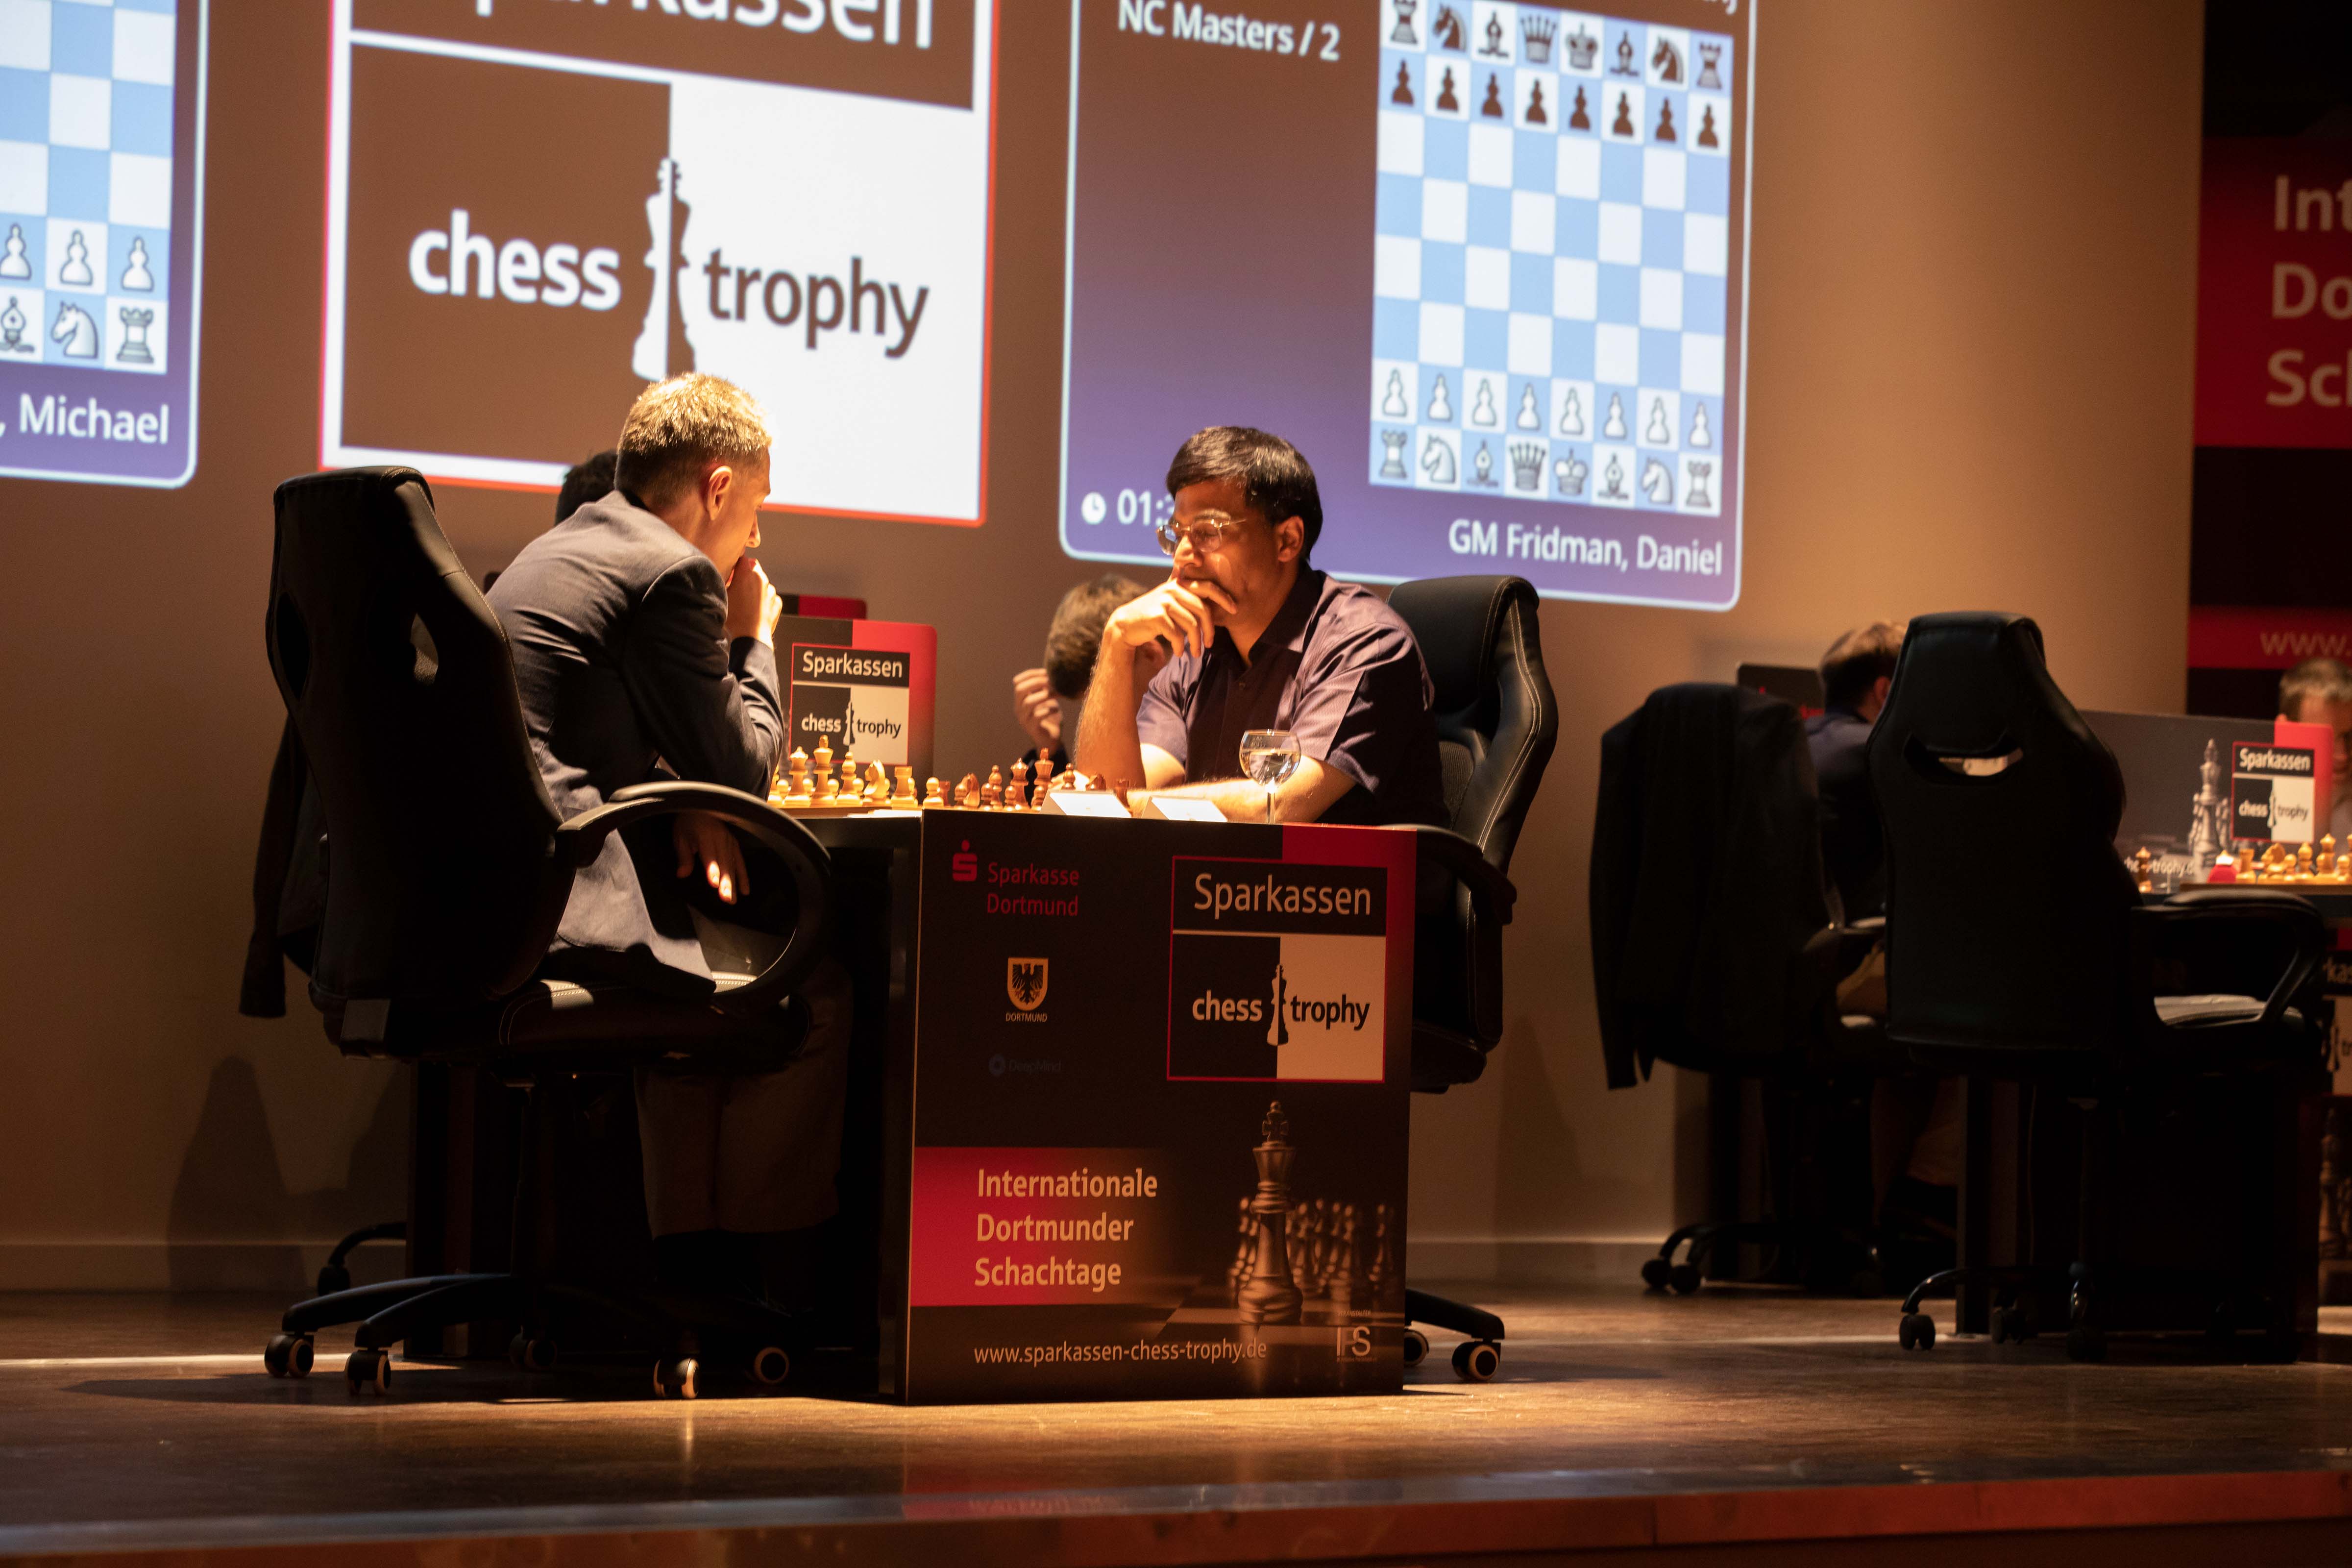 Viswanathan Anand startet mit remis im NC World Masters